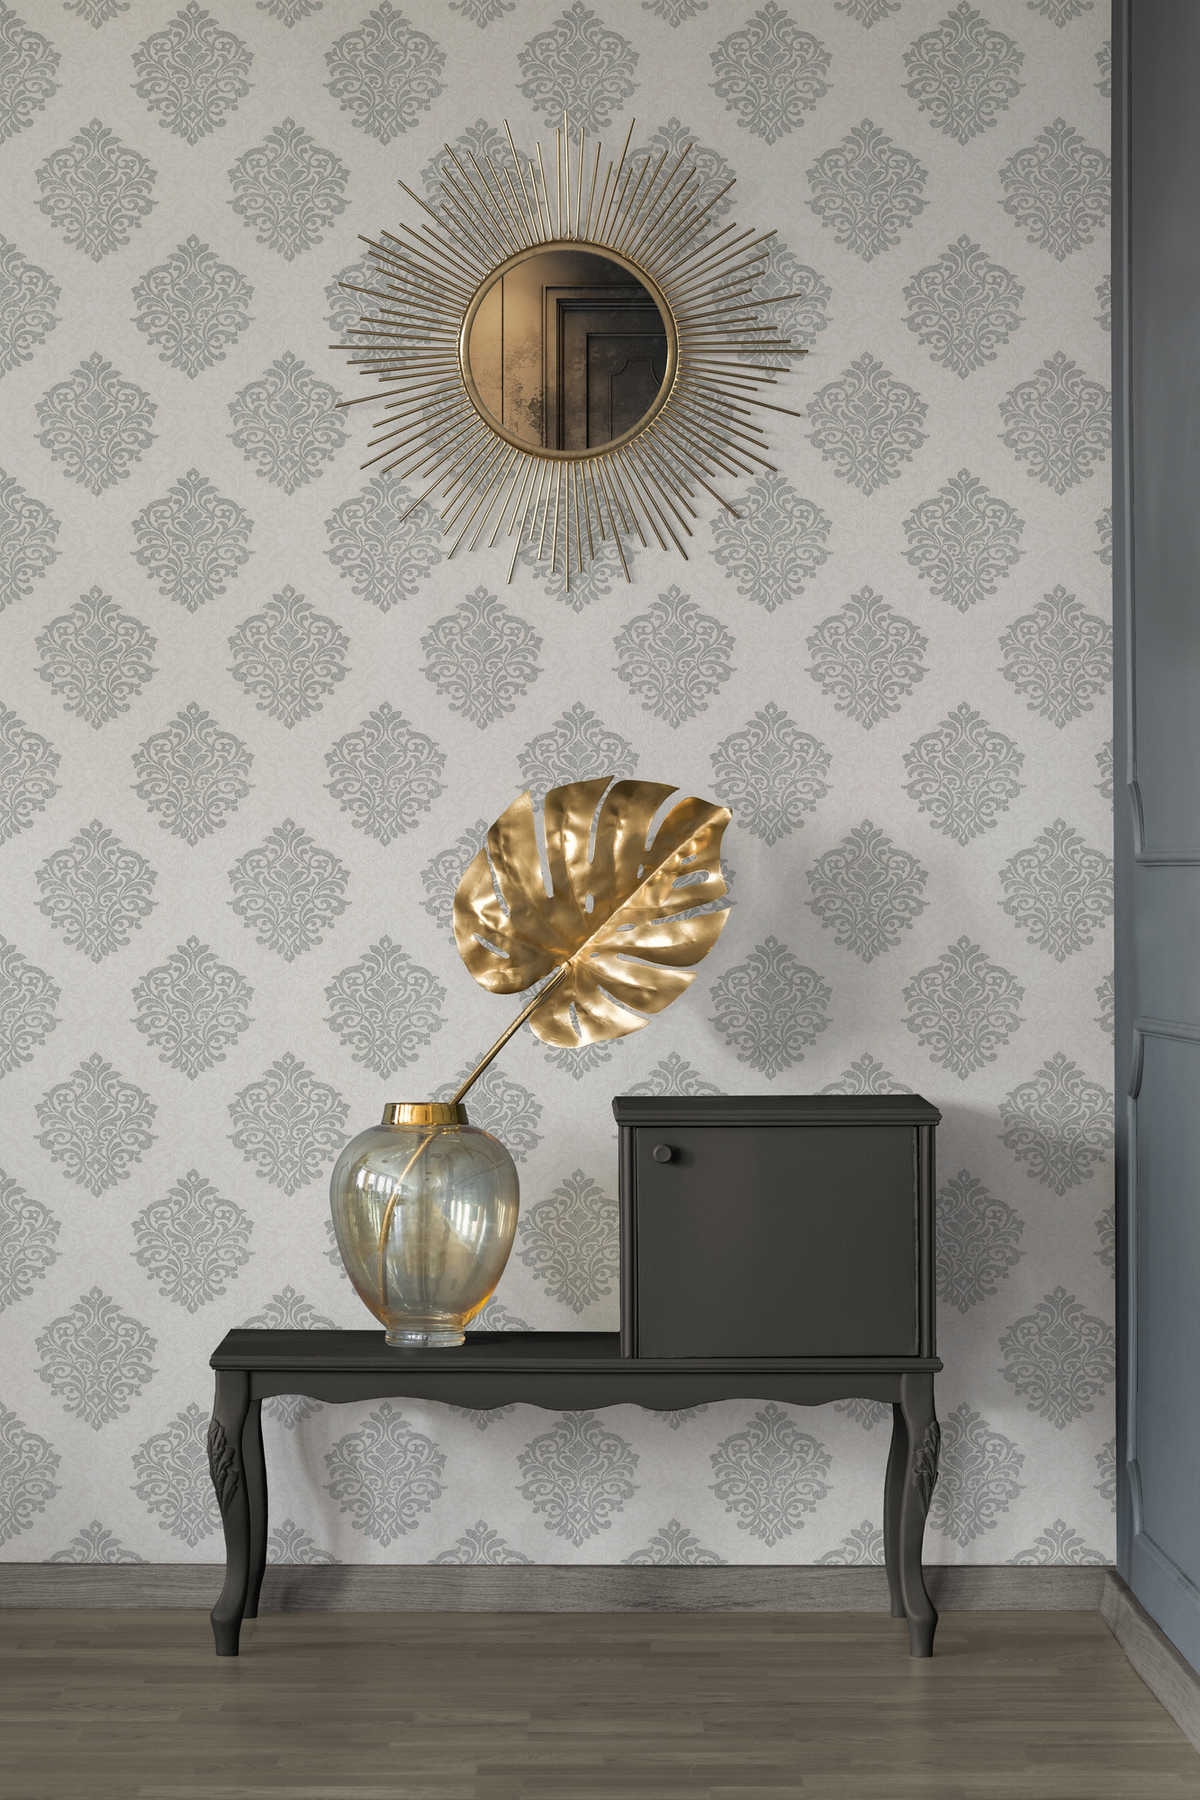             Floral ornamental wallpaper diamond pattern in ethnic style - beige, silver
        